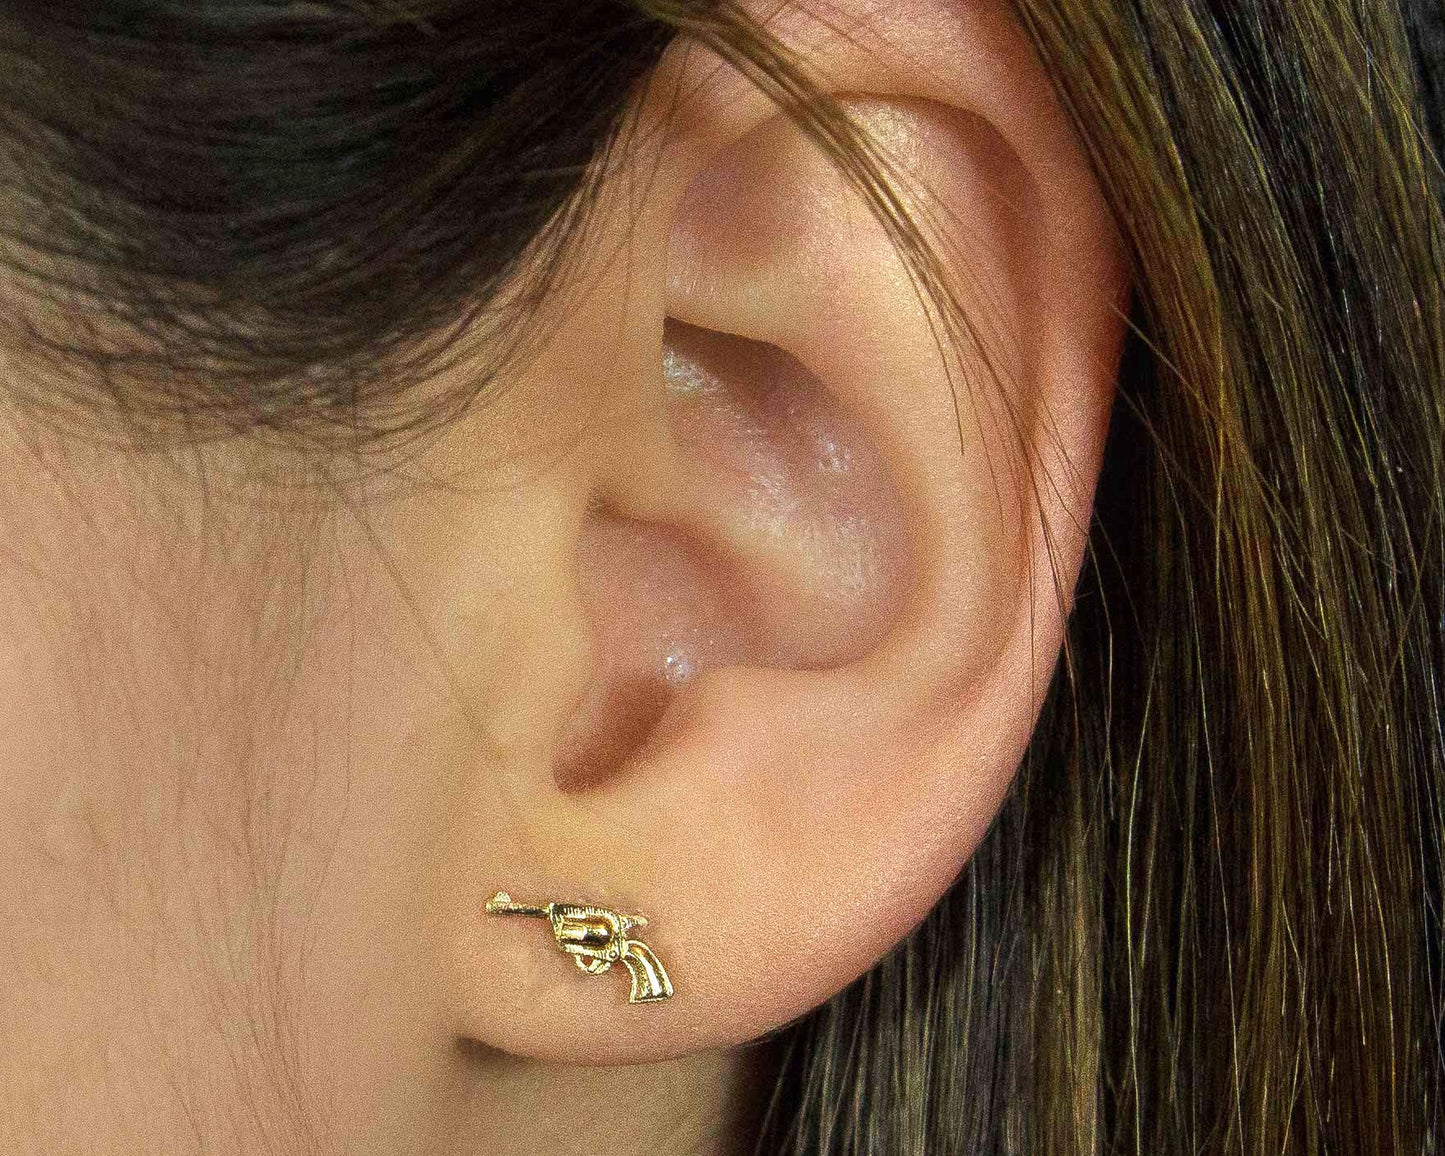 pistol earrings in gold cowgirl jewelry